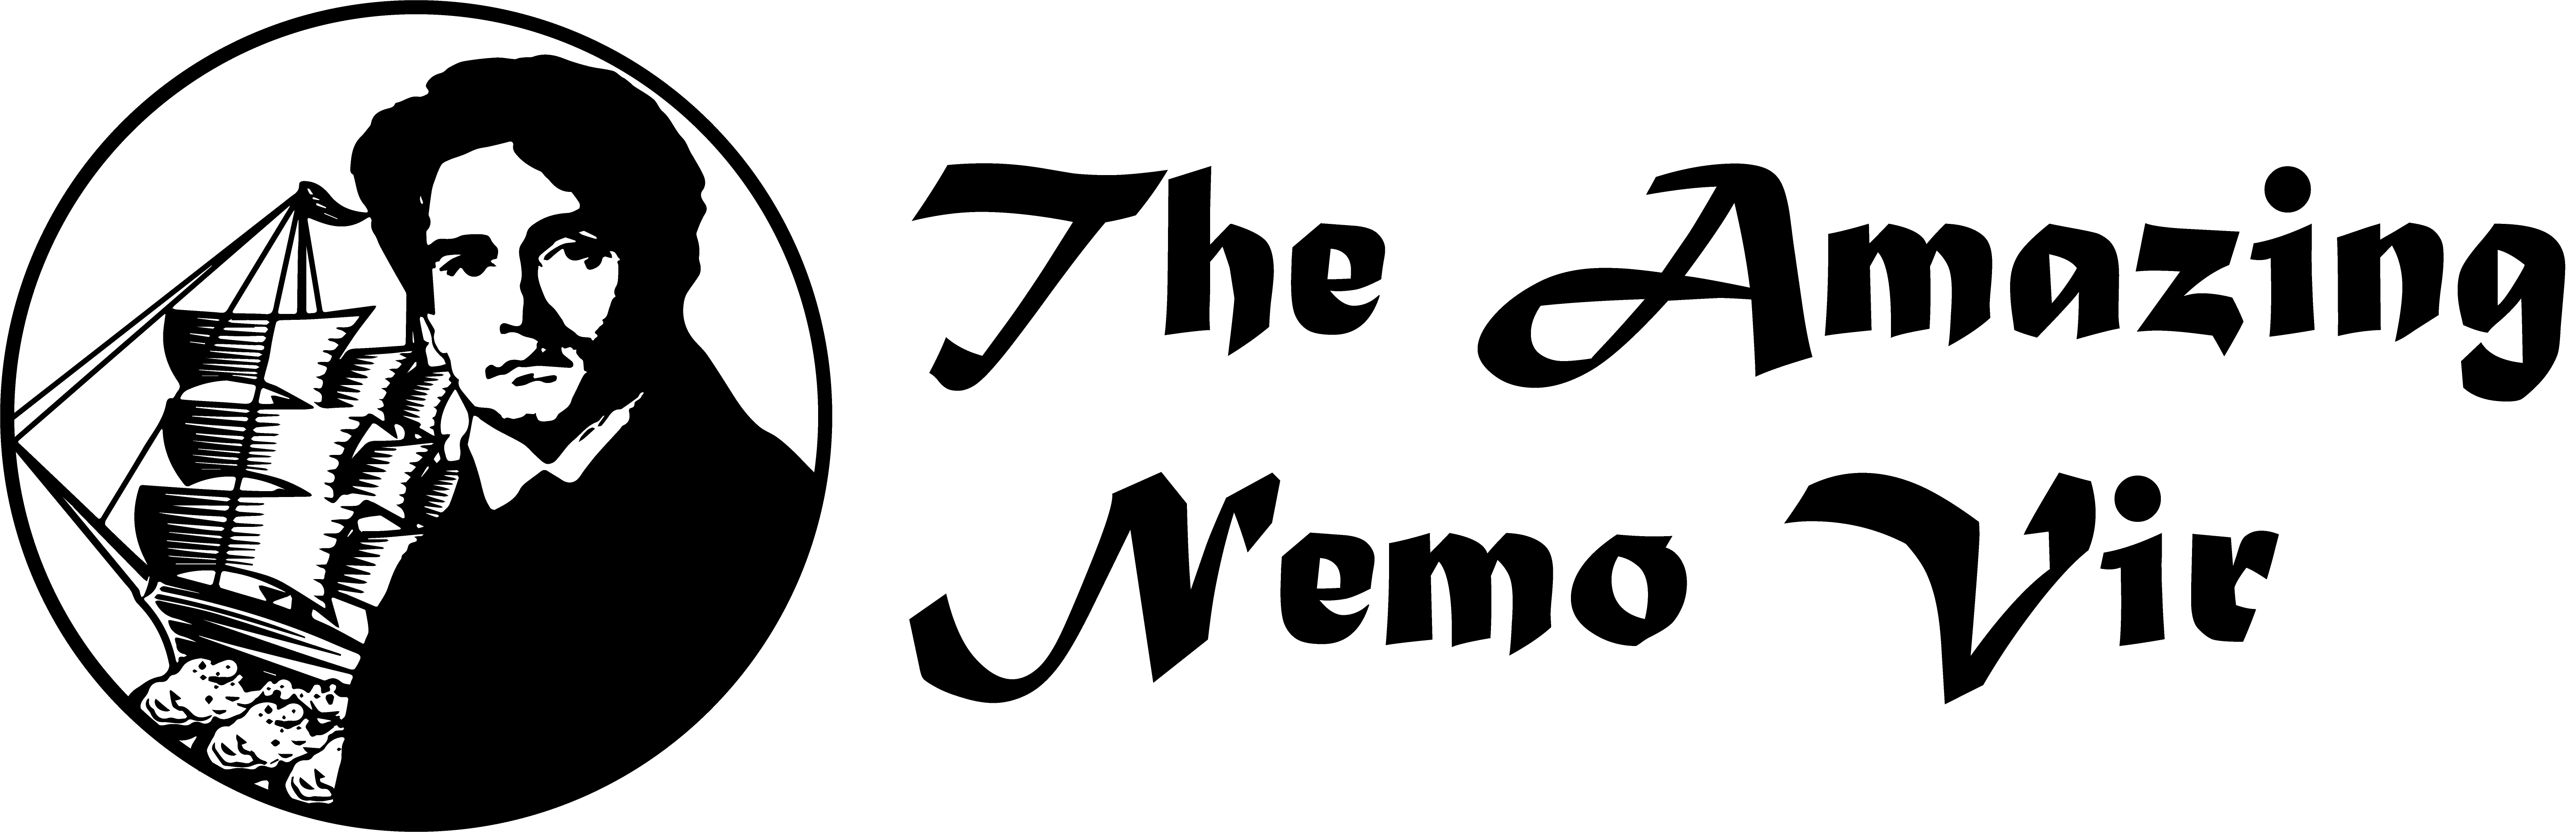 Nemo Vir Logo